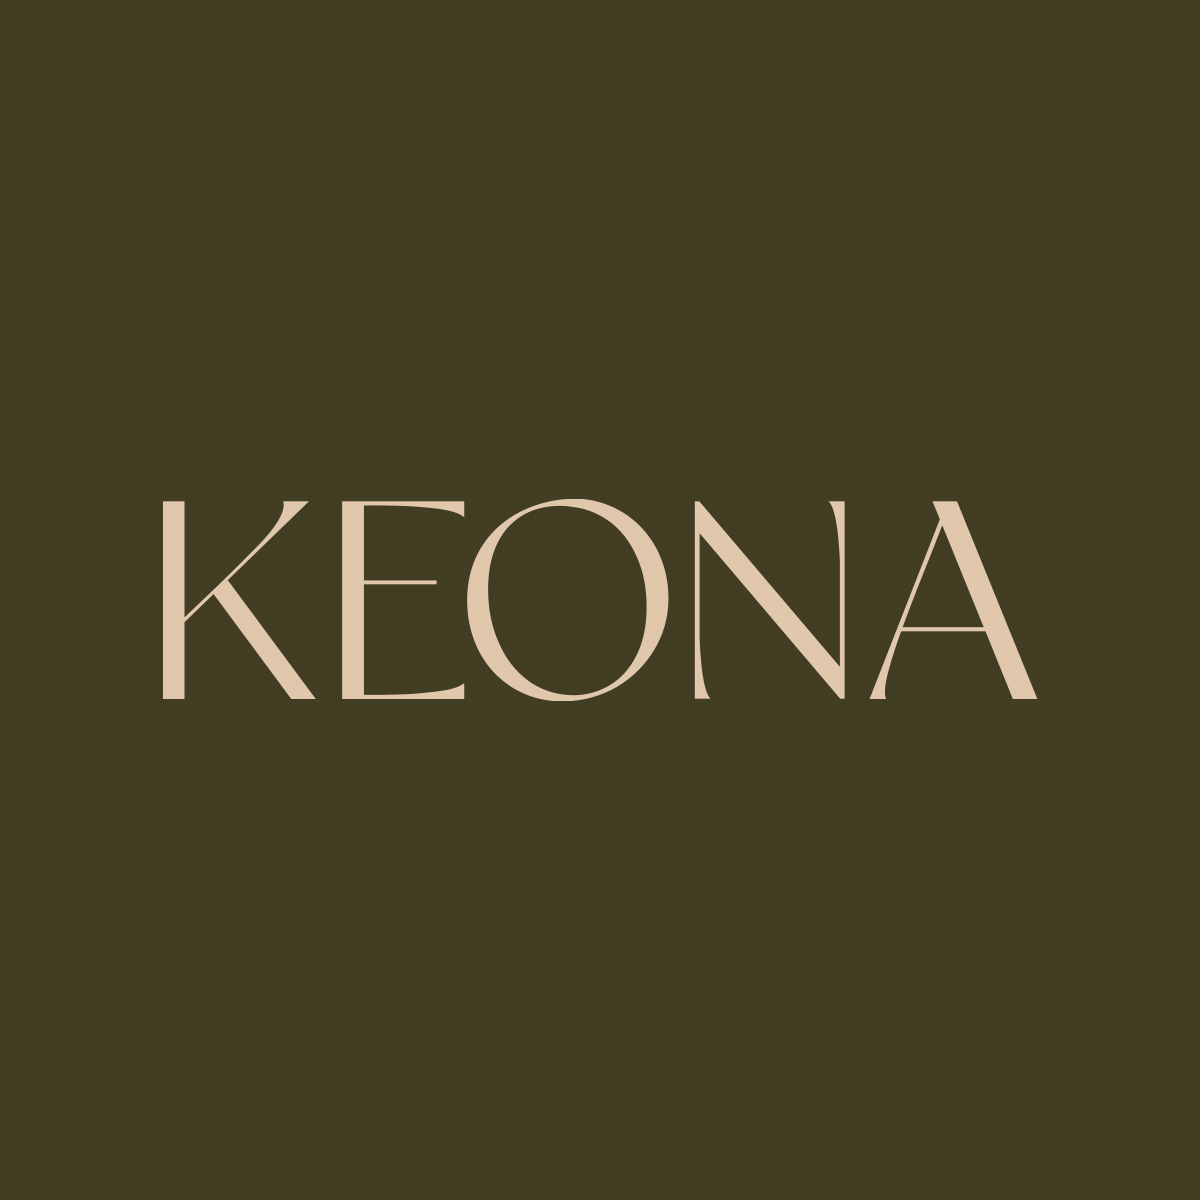 Keona Design